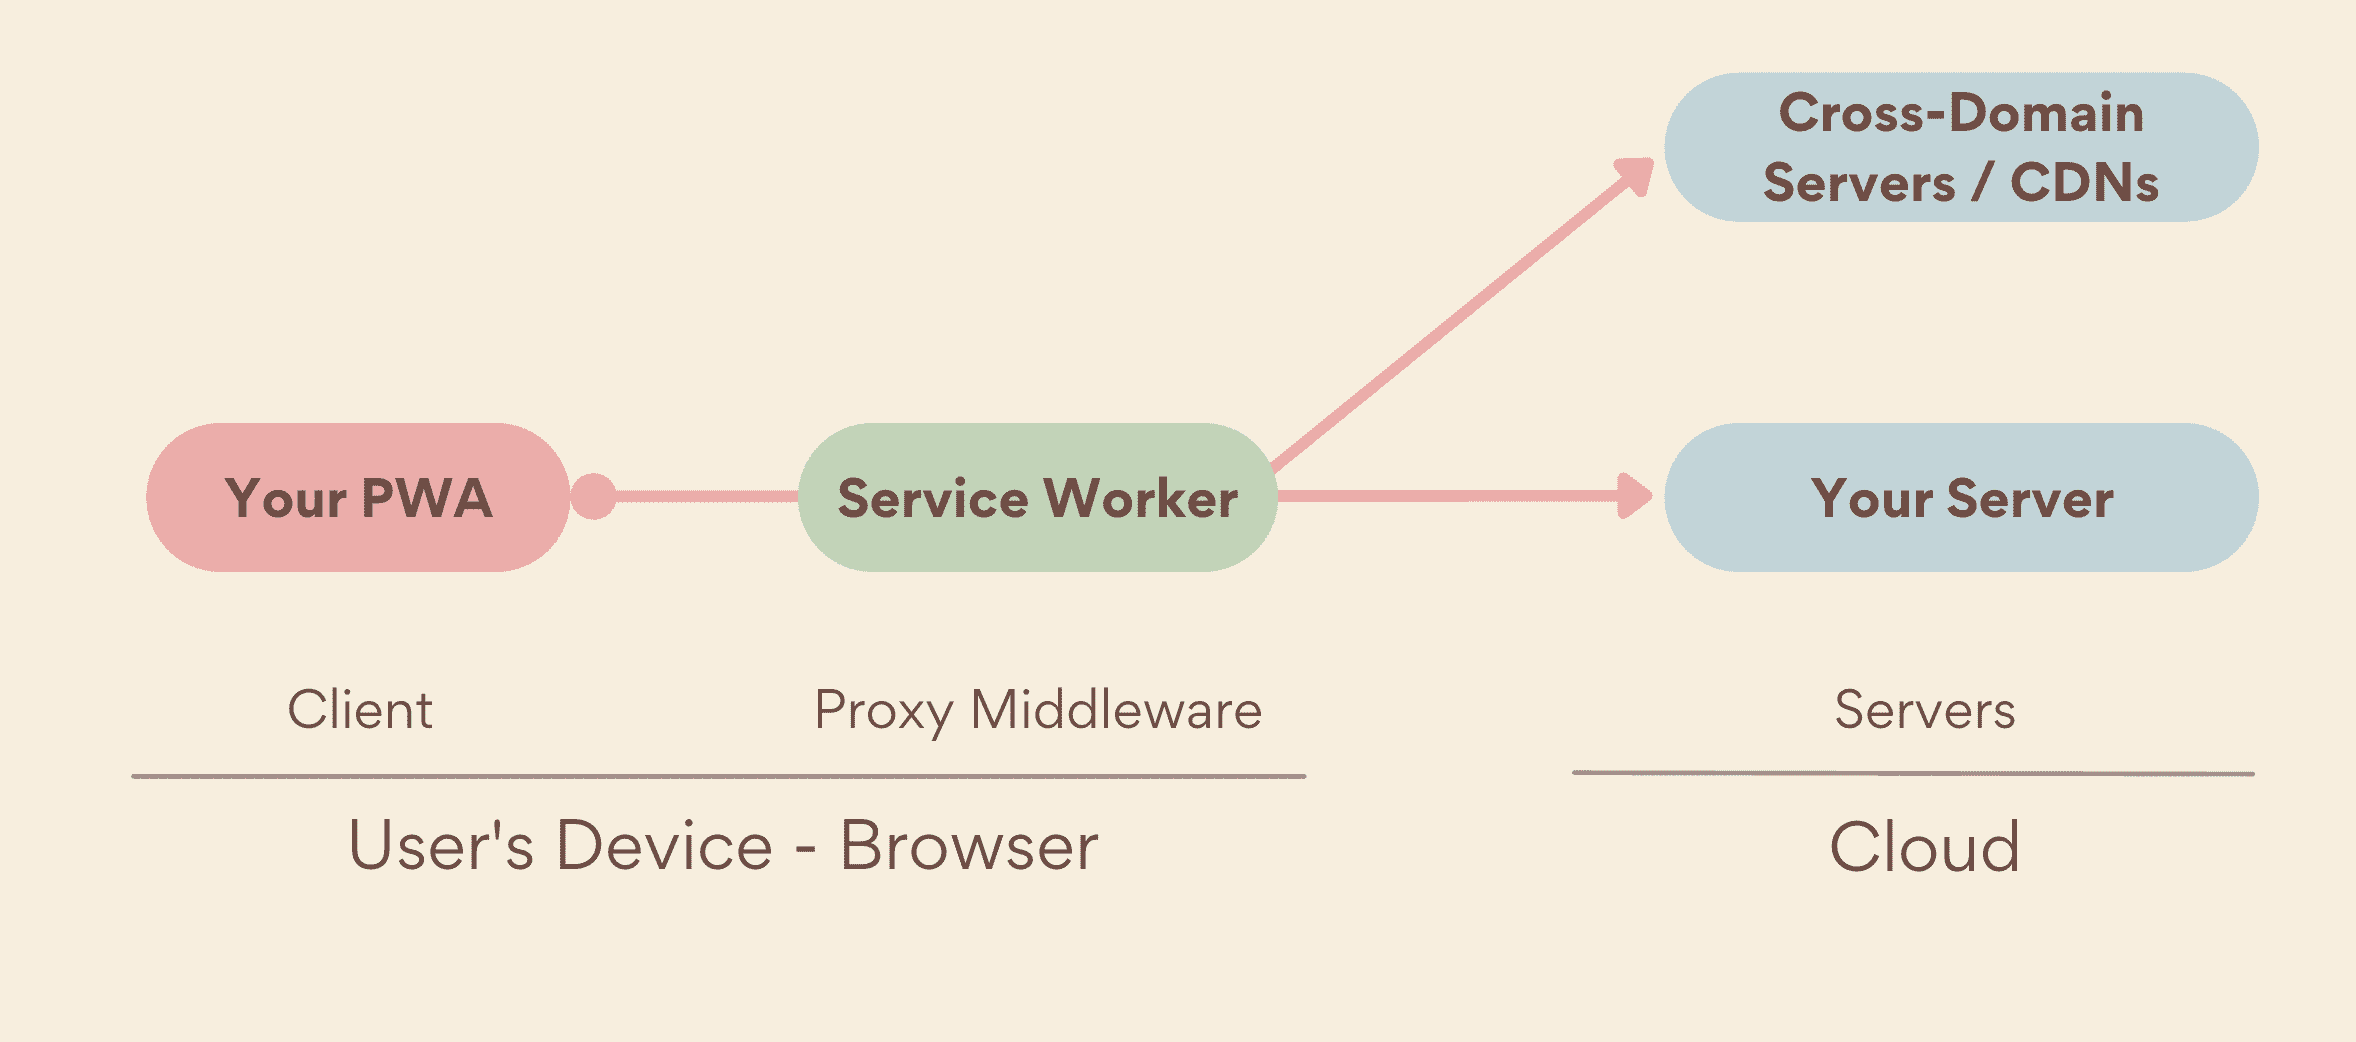 קובץ שירות (service worker) כשרת proxy של תווכה, שפועל בצד המכשיר, בין ה-PWA שלכם לשרתים, שכולל גם שרתים שלכם וגם שרתים בכמה דומיינים.